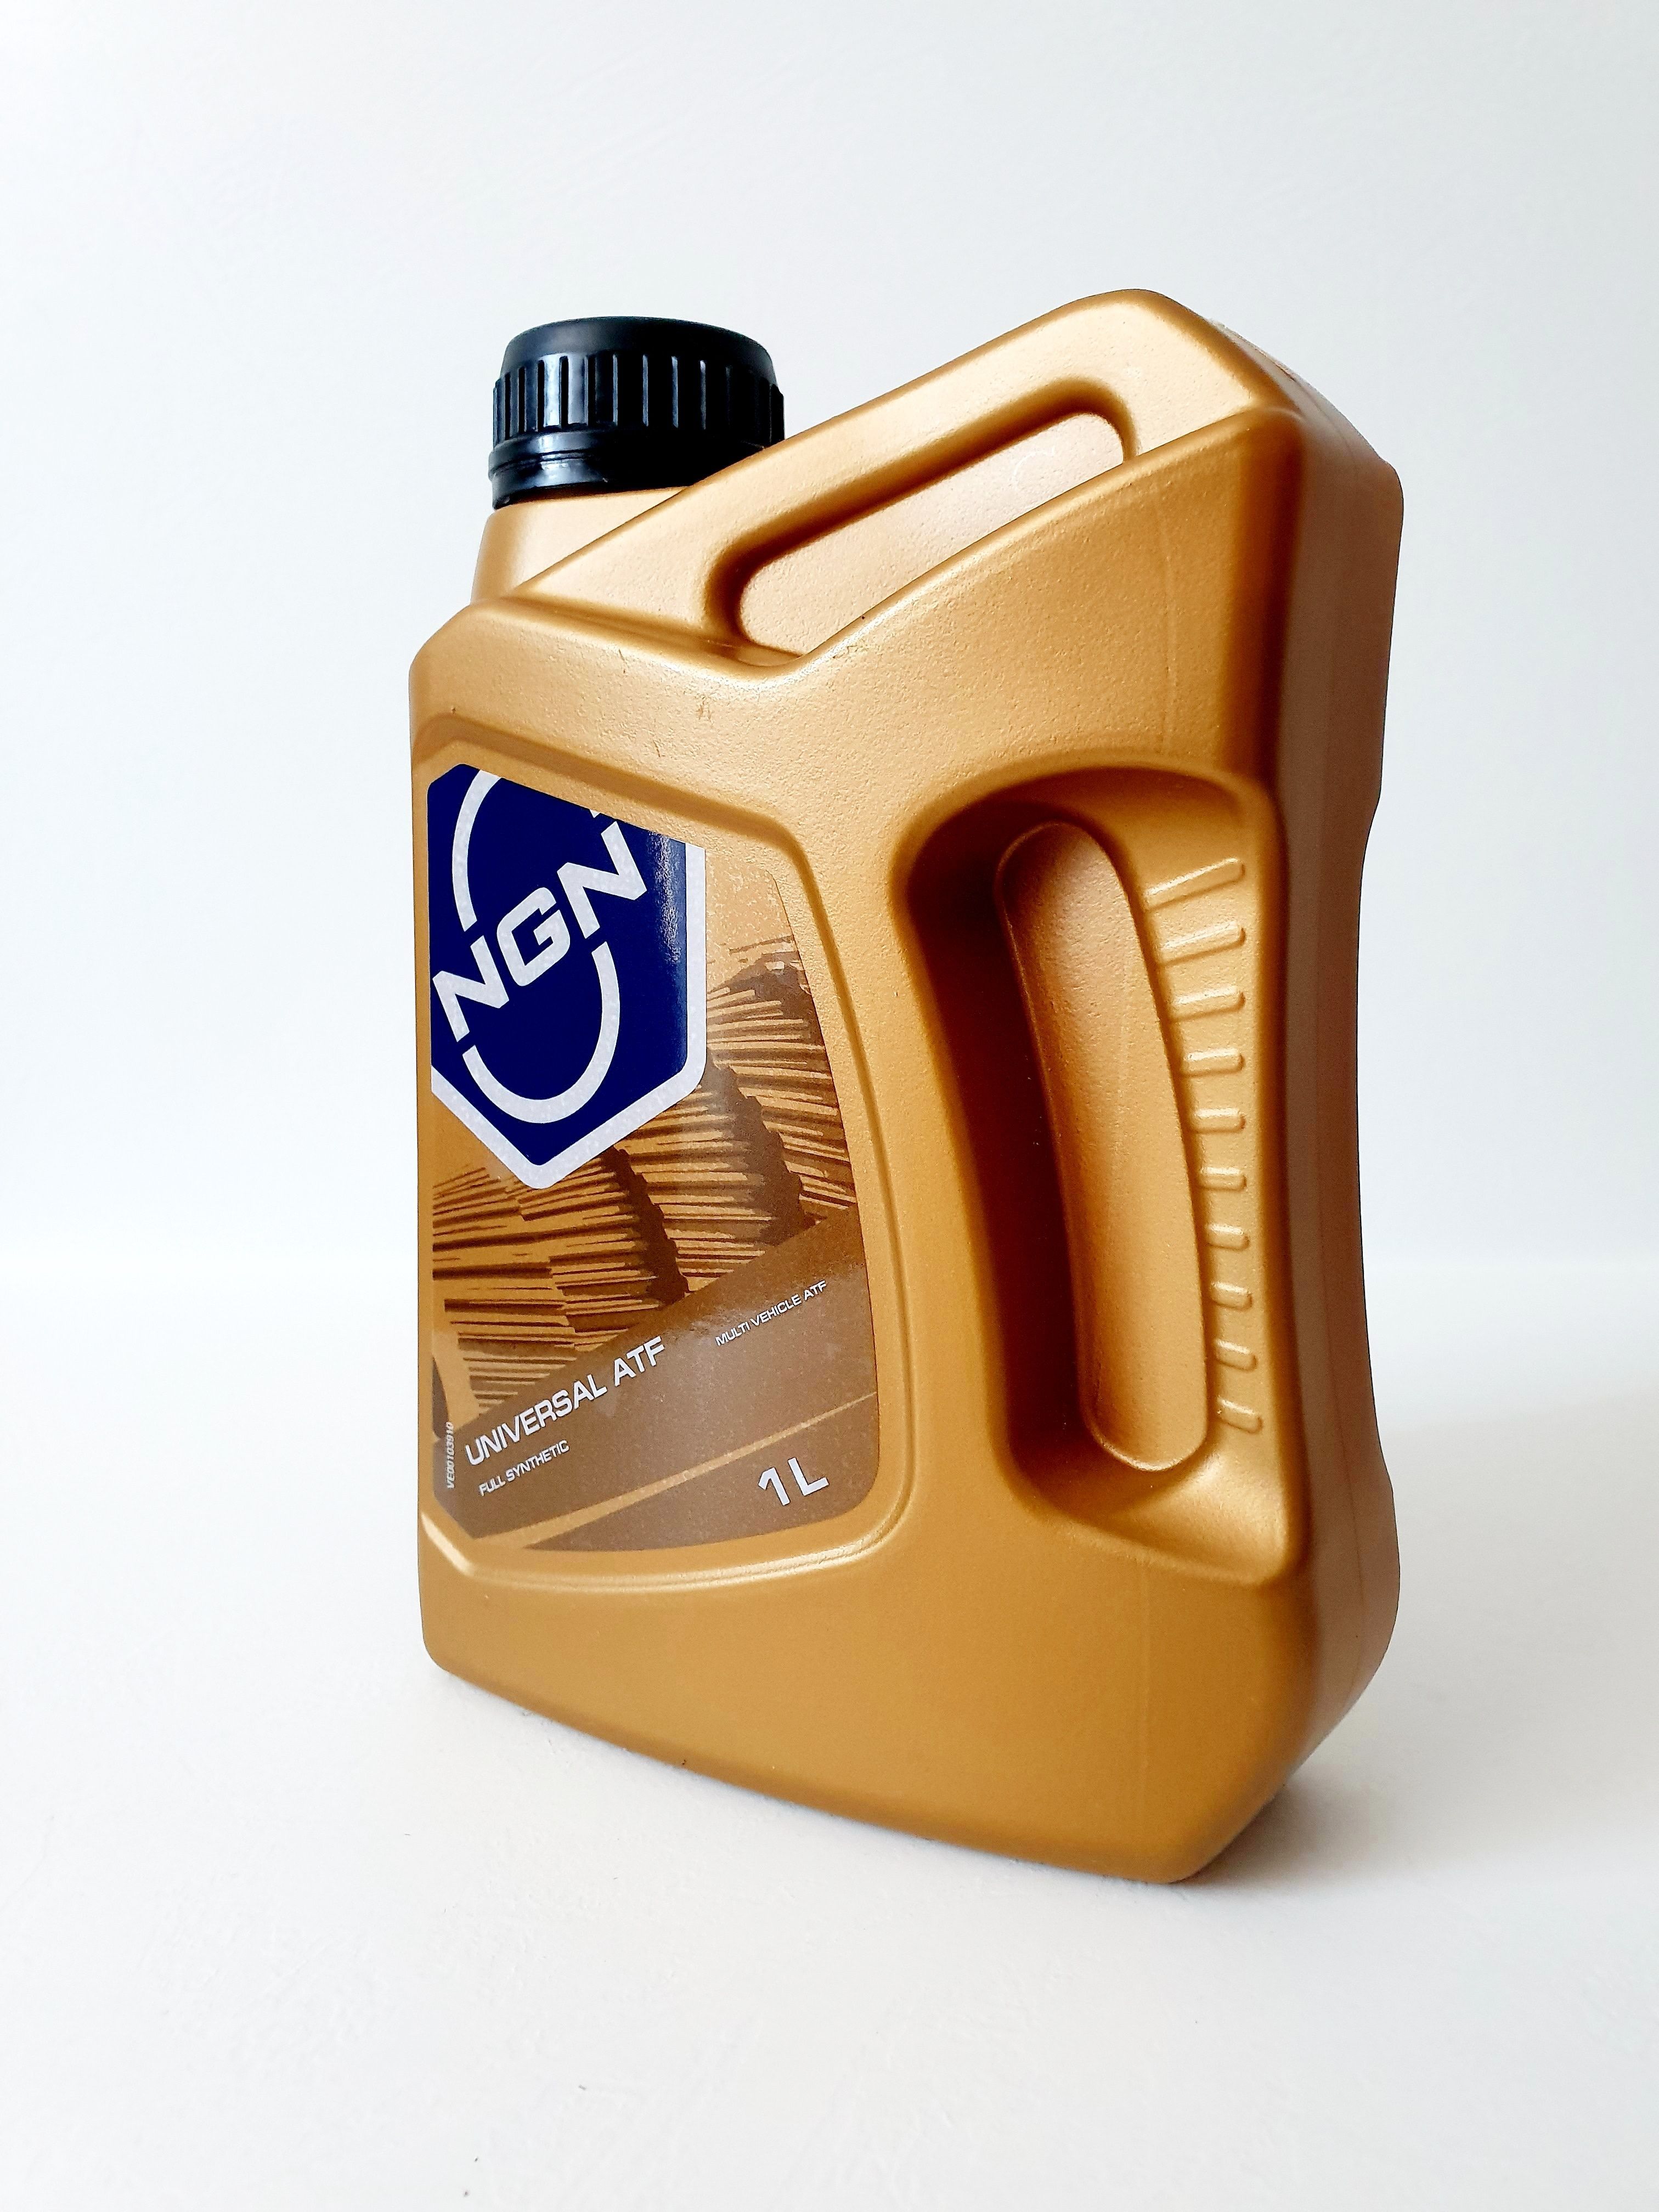 Трансмиссионное масло NGN ATF Universal 1л (v172085612) v272085612. NGN масло трансмиссионное АКПП. Масло NGN SVT Fe. NGN 5 30 масло реклама.